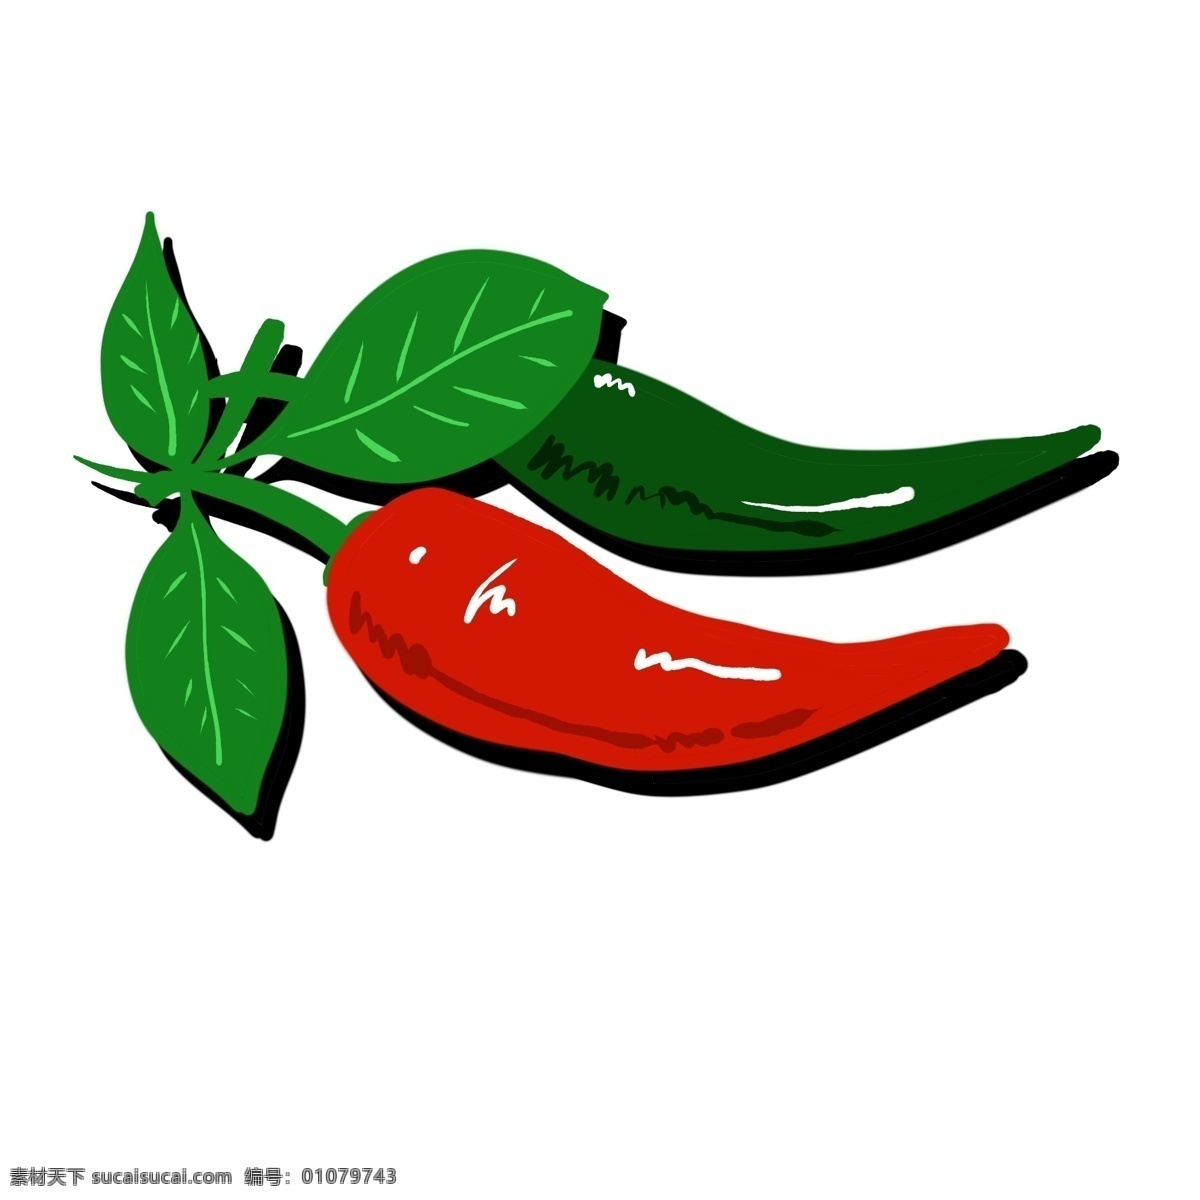 辣椒 生长 装饰 红色 绿色 装饰画 自然 种植 蔬菜 辣 朝天椒 调味品 食物 叶子 绿色食品 健康 火辣 辣味 卡通